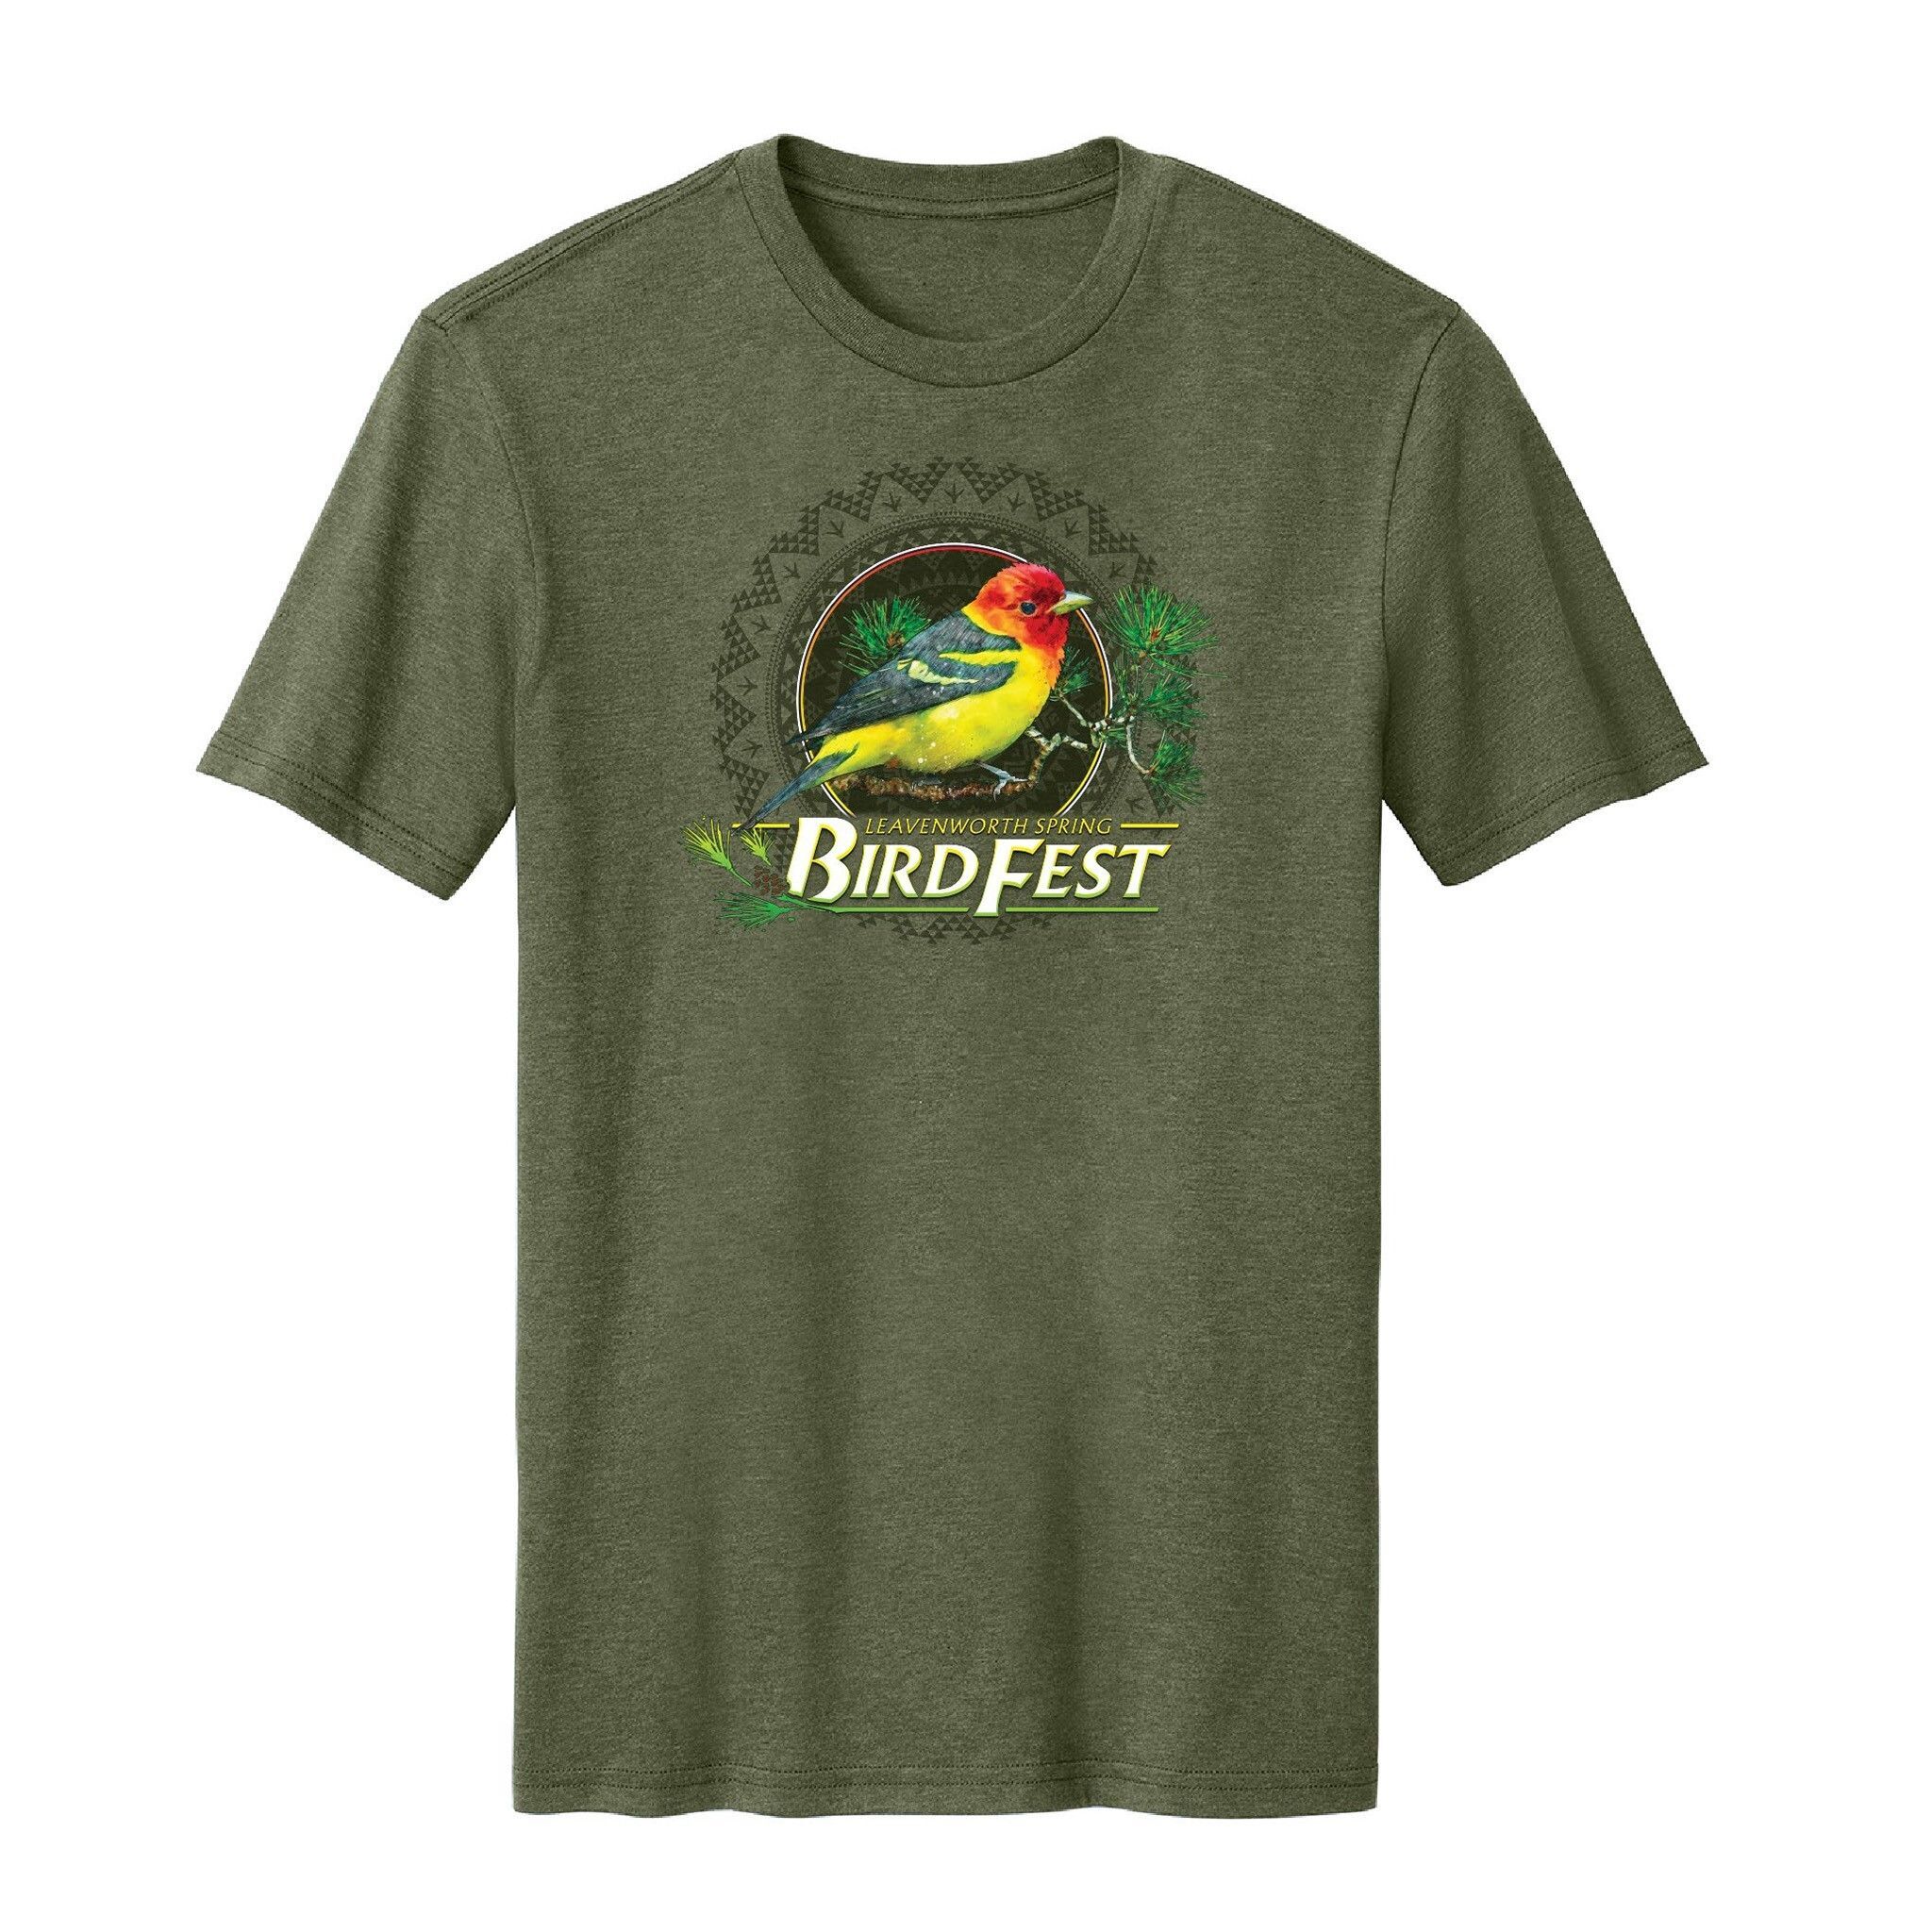 Pre-Order a Bird Fest Shirt by 5/1